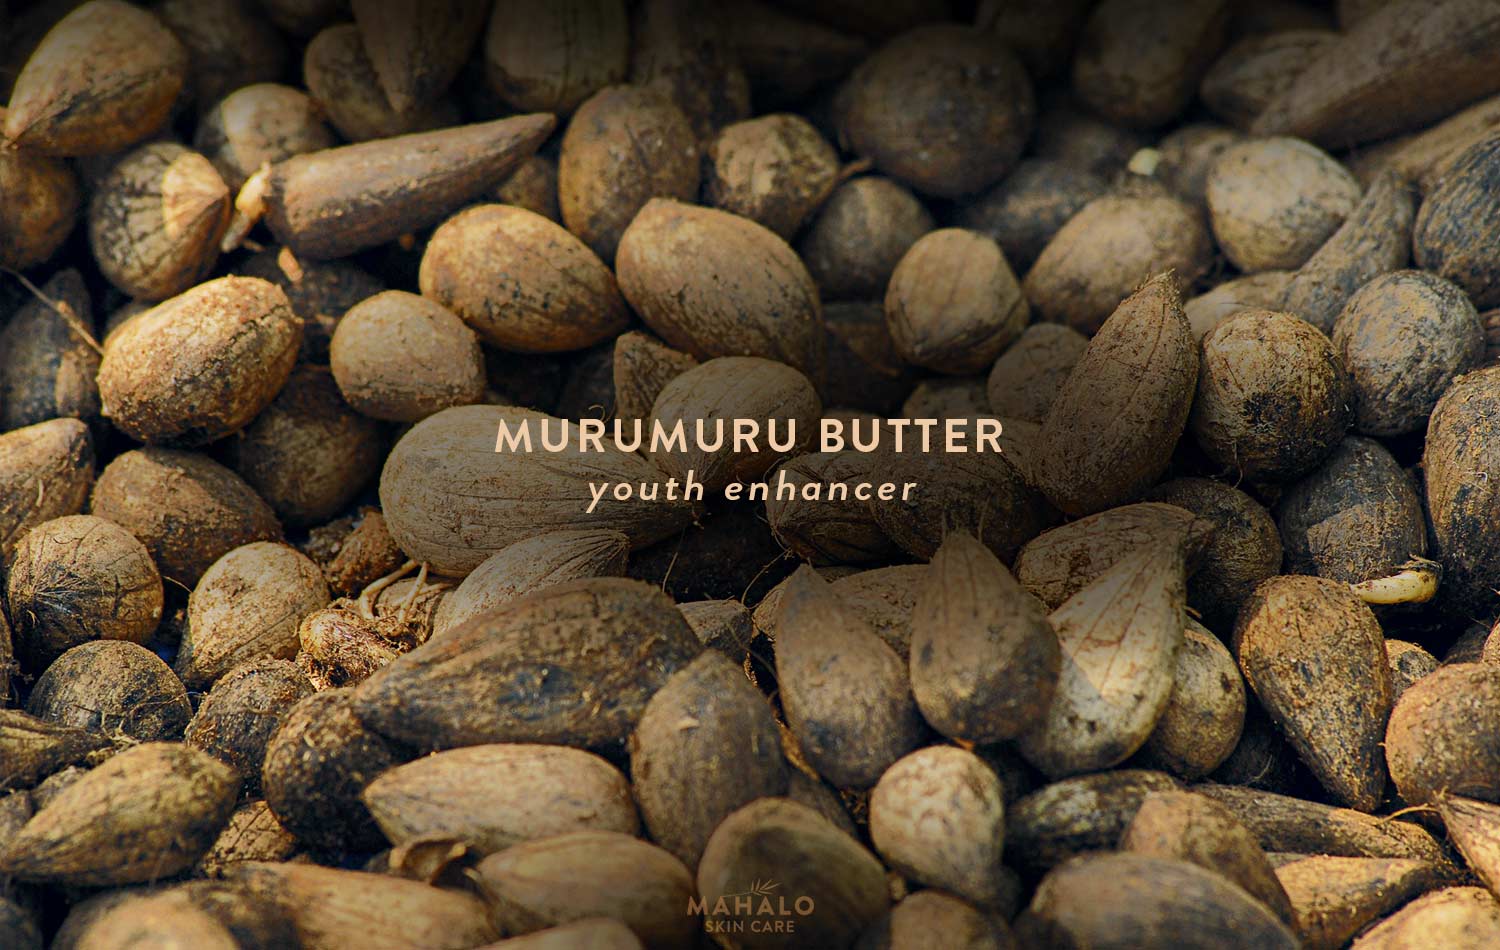 Murumuru Butter, a youth enhancer